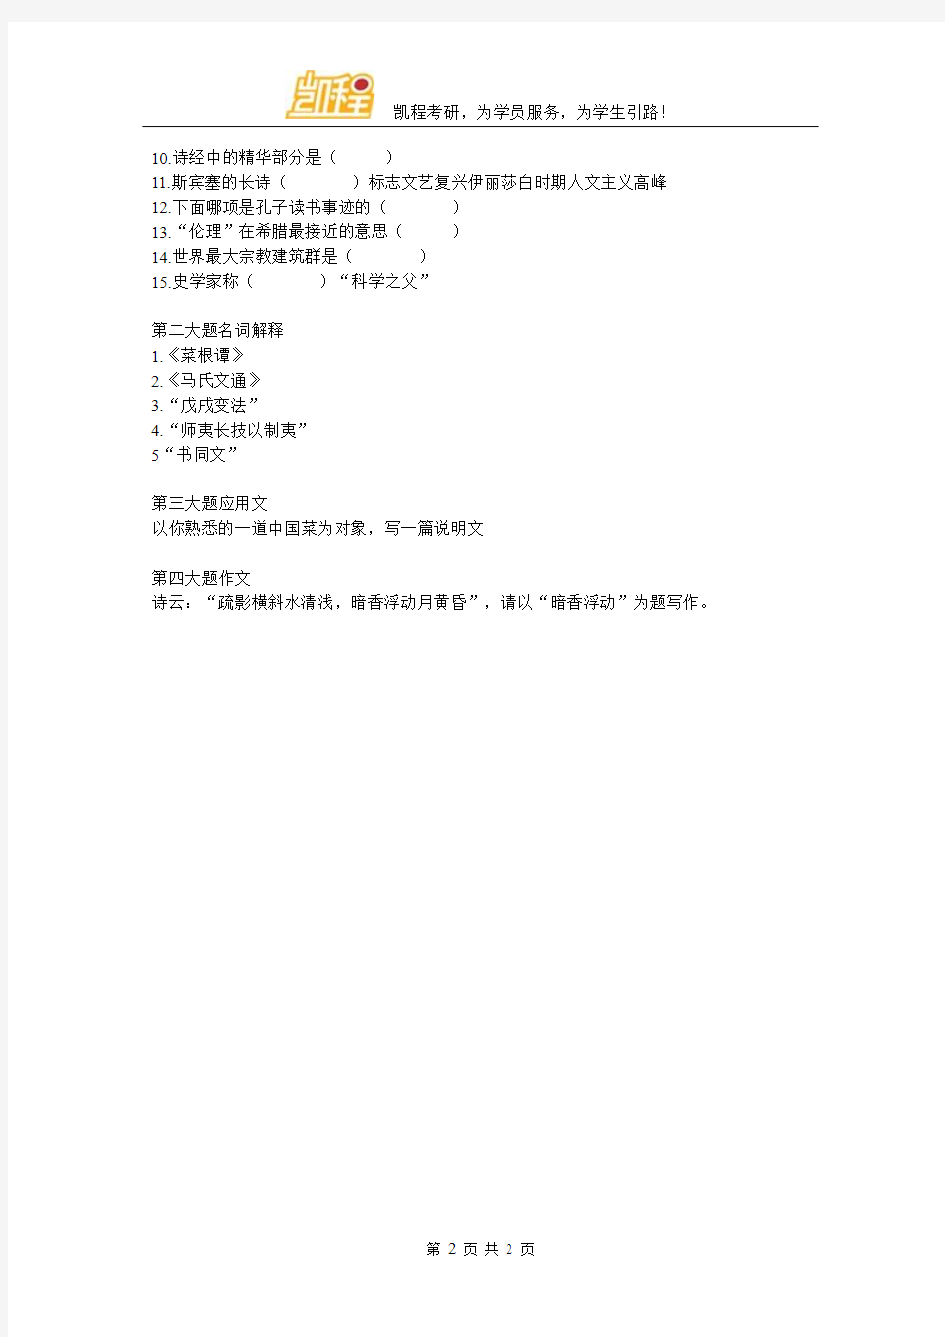 2017年上海大学MTI真题回忆版(凯程首发)